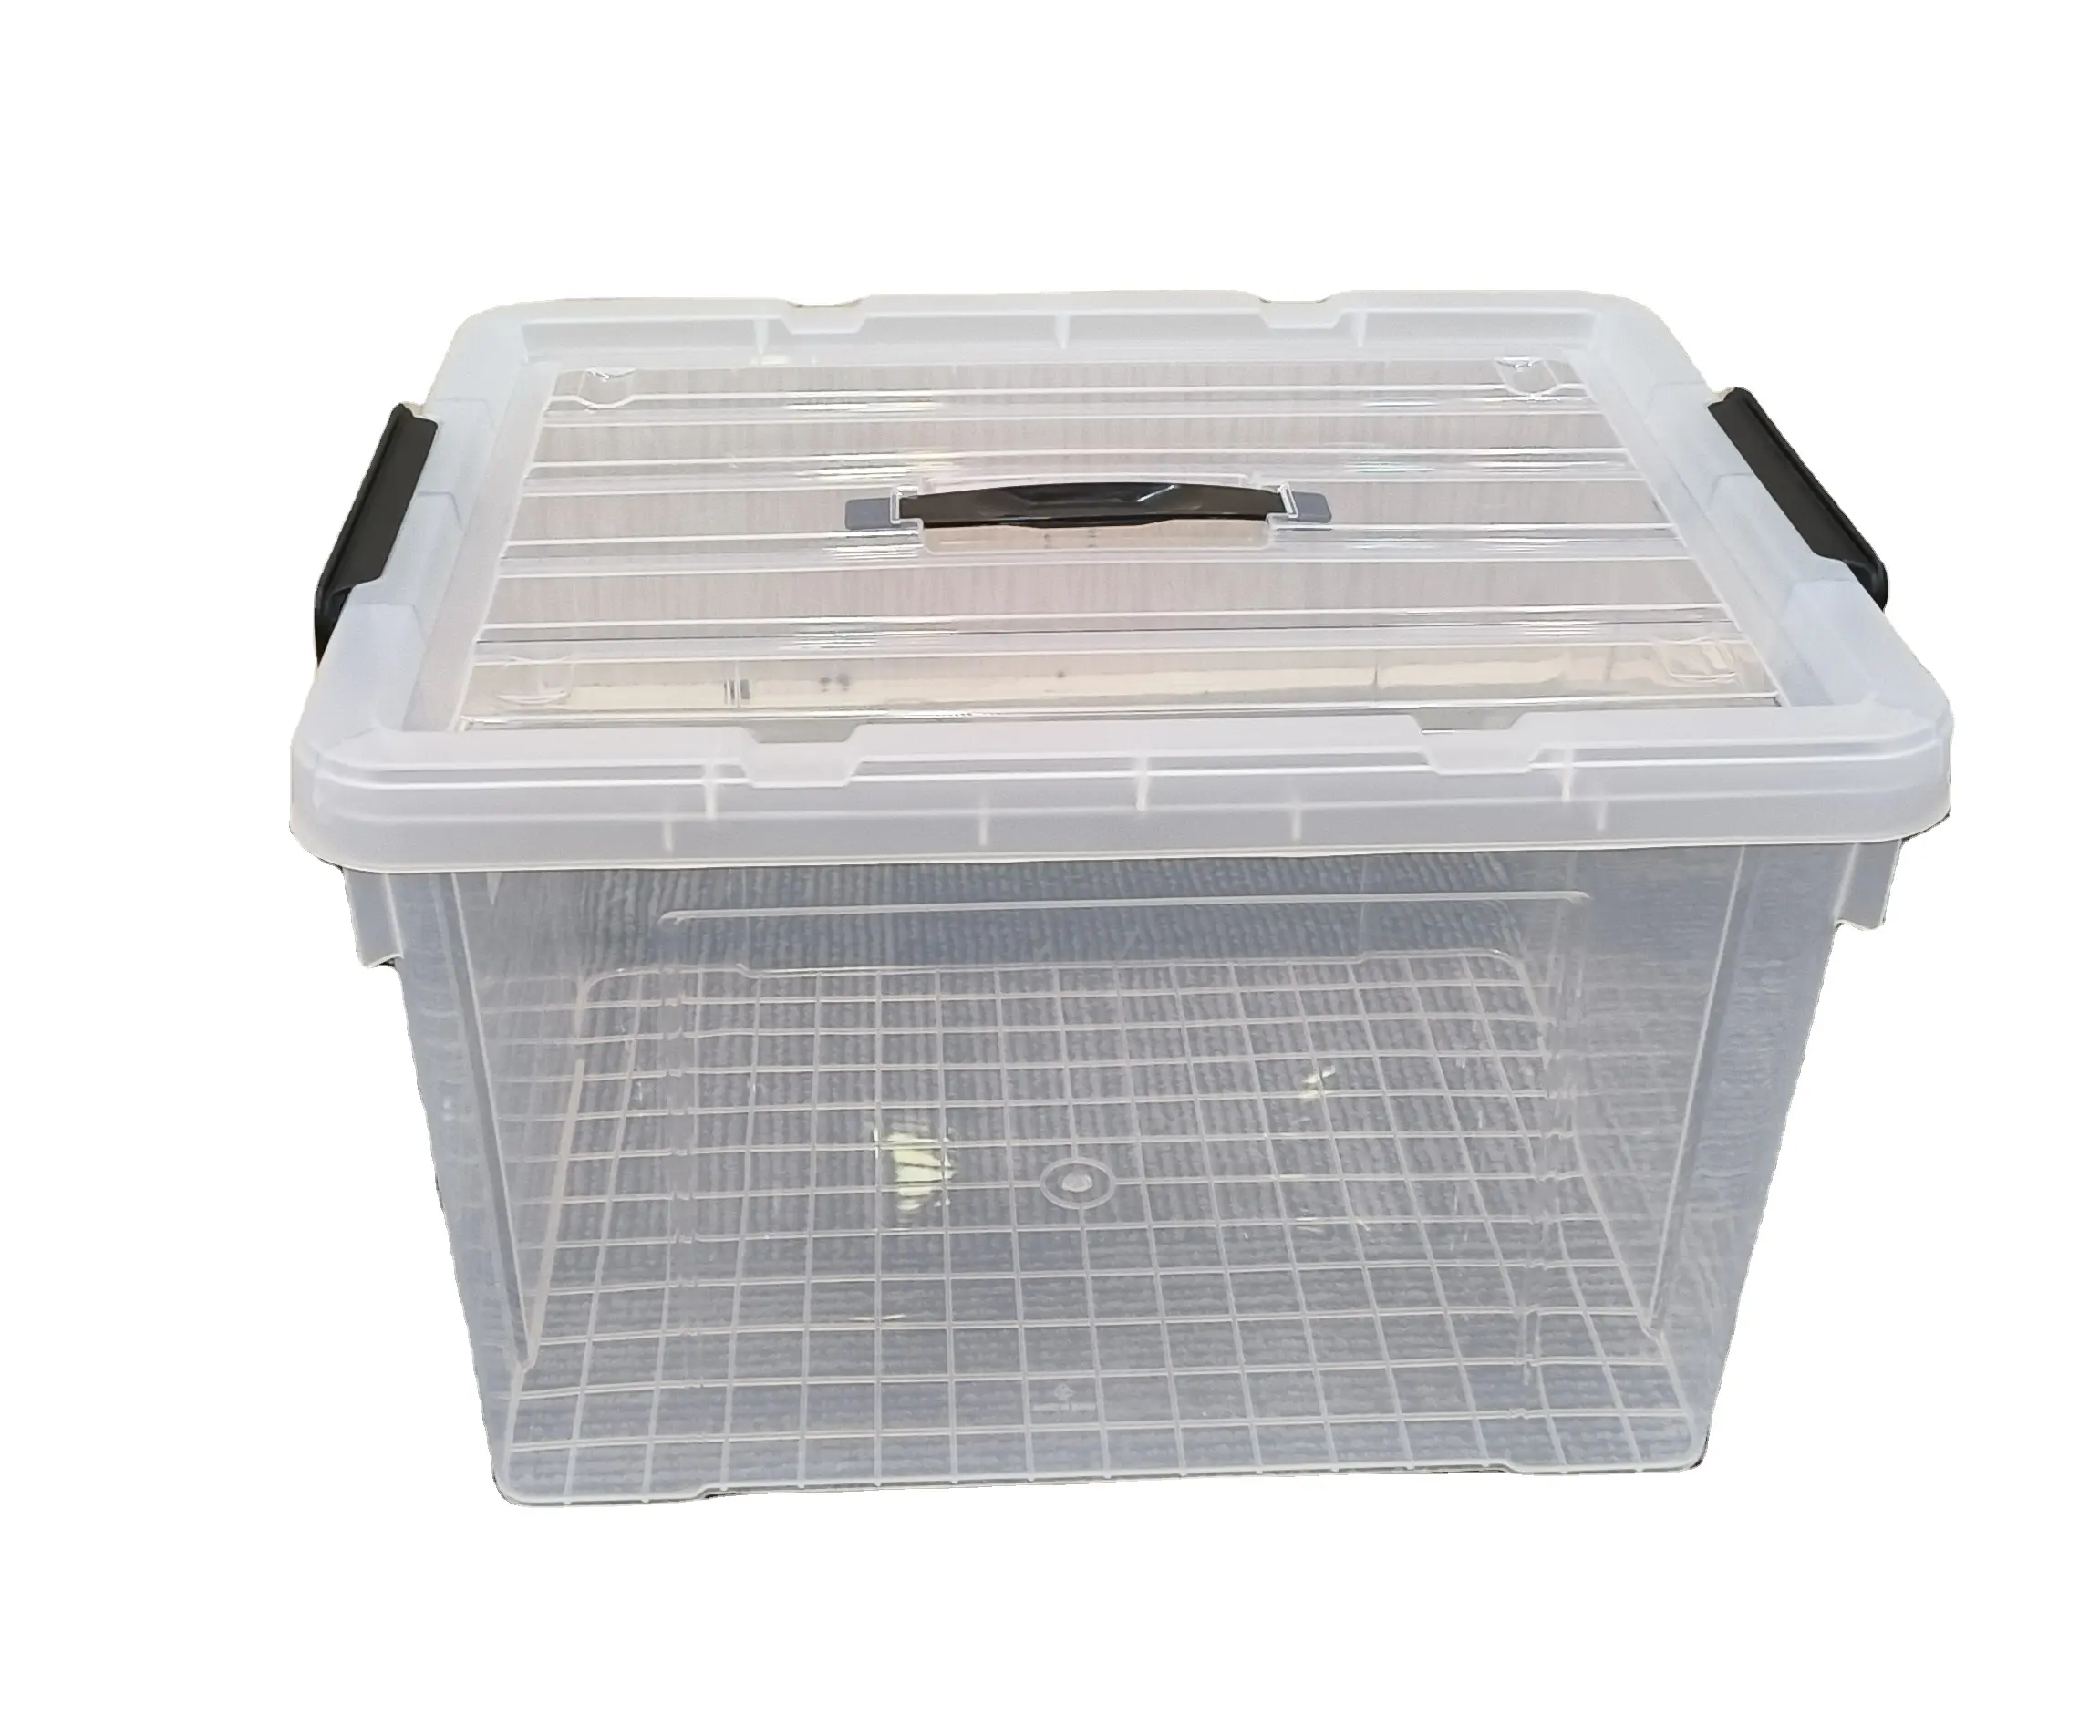 Robuste Aufbewahrung sbox mit Verriegelung griff und Rädern Deckel Aufbewahrung sbox Transparente Aufbewahrung sbox aus Kunststoff für Wäsche spielzeug